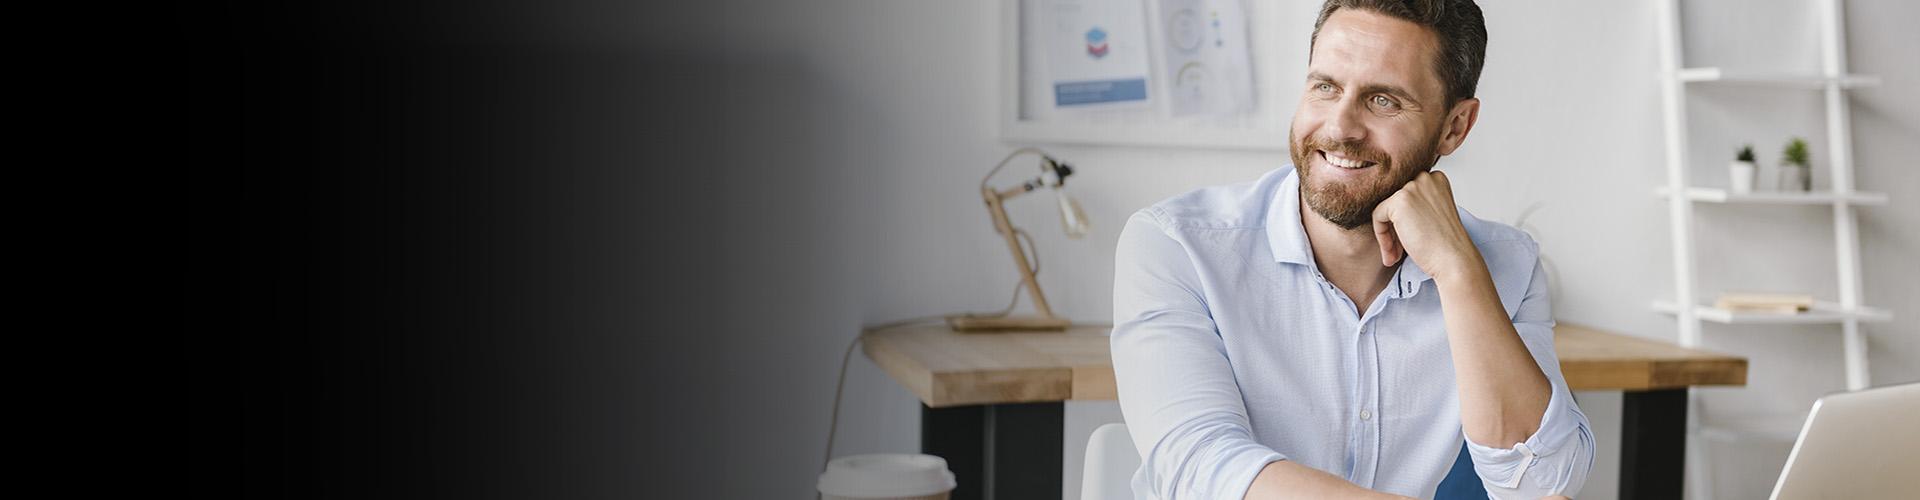 Cuentas Autónomos - Hombre de negocios con barba y camisa blanca sonriendo mientras trabaja frente su portátil